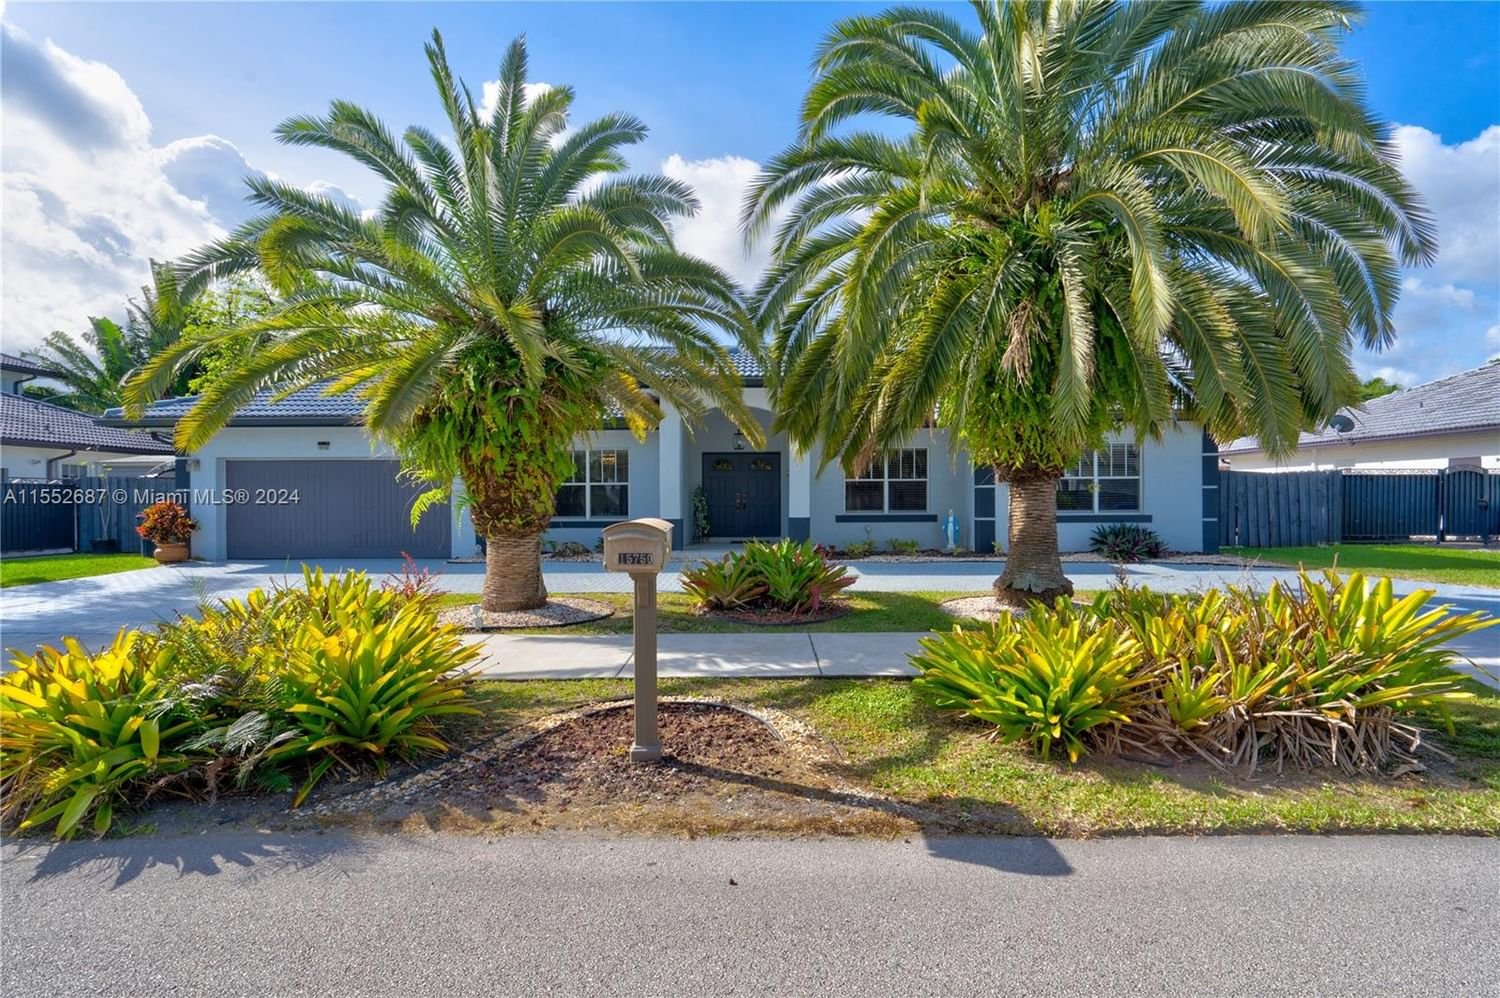 Real estate property located at 15750 45th St, Miami-Dade County, BARIMA ESTATES, Miami, FL